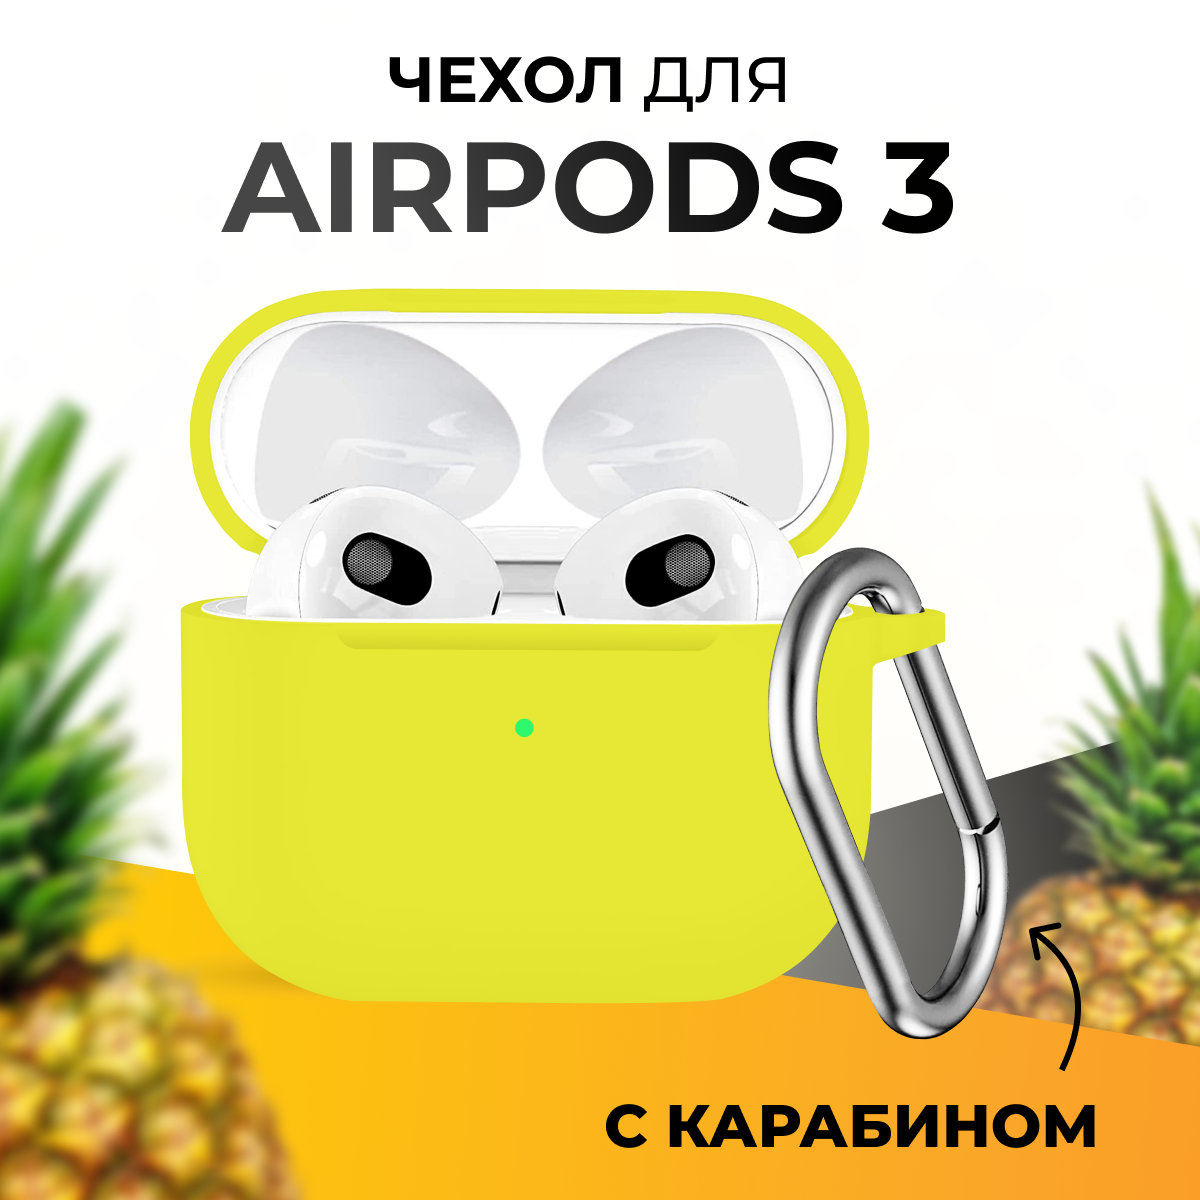 Чехол для беспроводных наушников Apple AirPods 3 / Защитный чехол для Эпл Айрподс 3 / Кейс для блютус наушников с карабином / Желтый